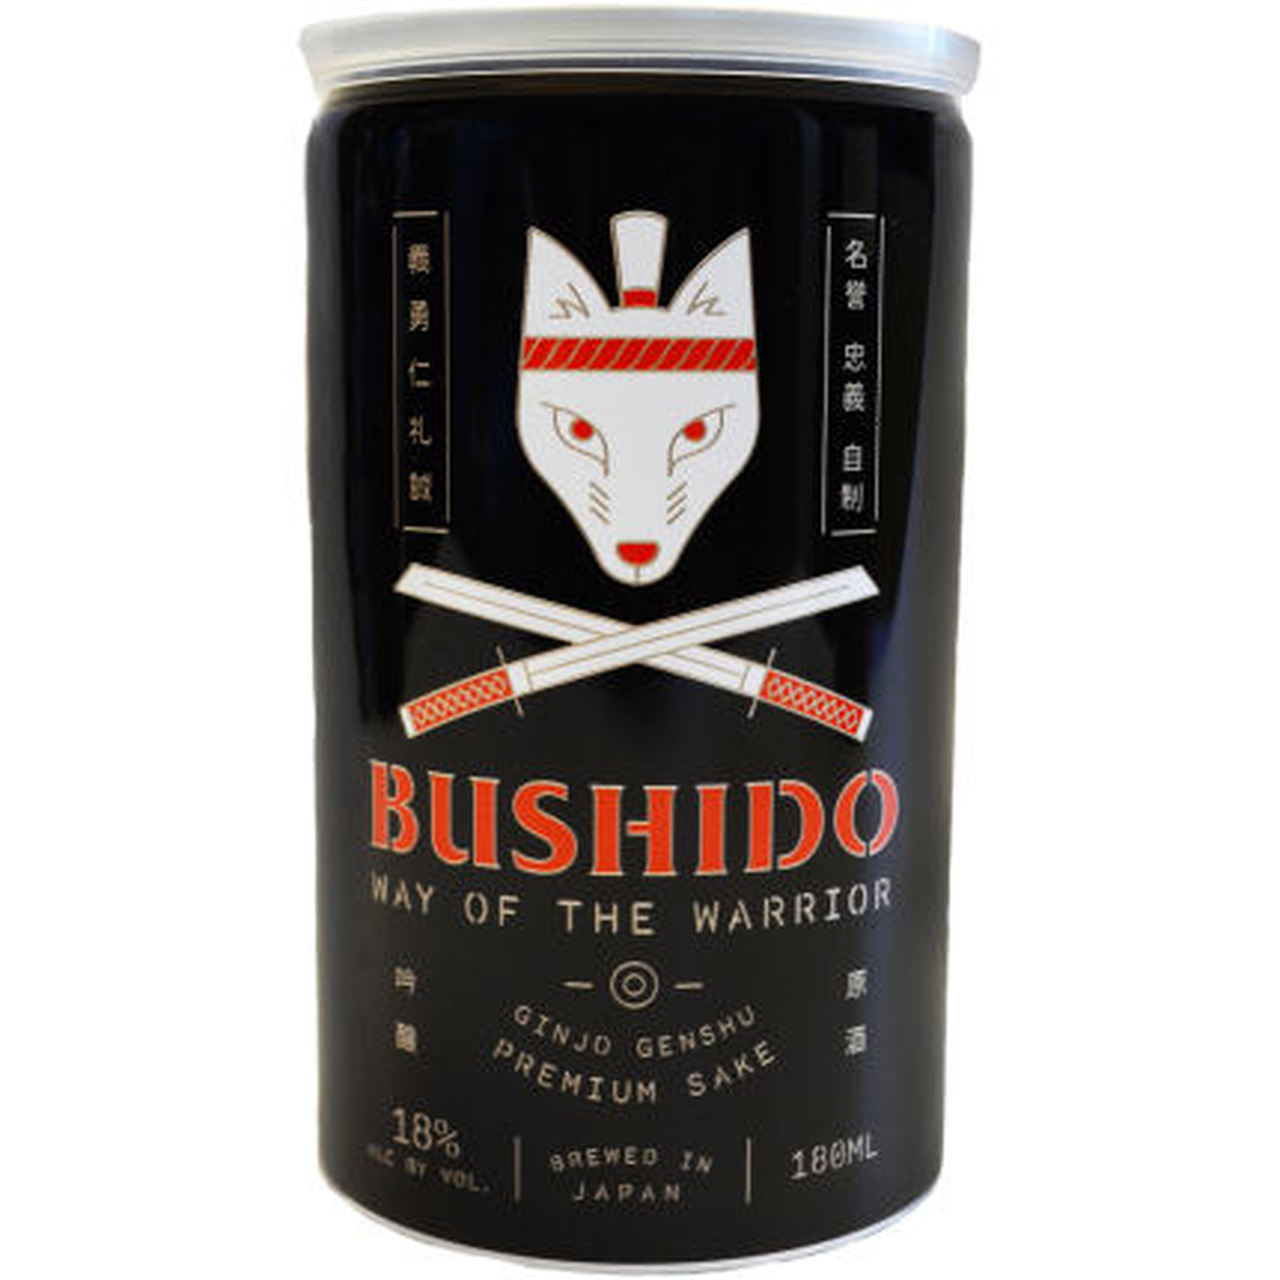 Bushido Sake. 